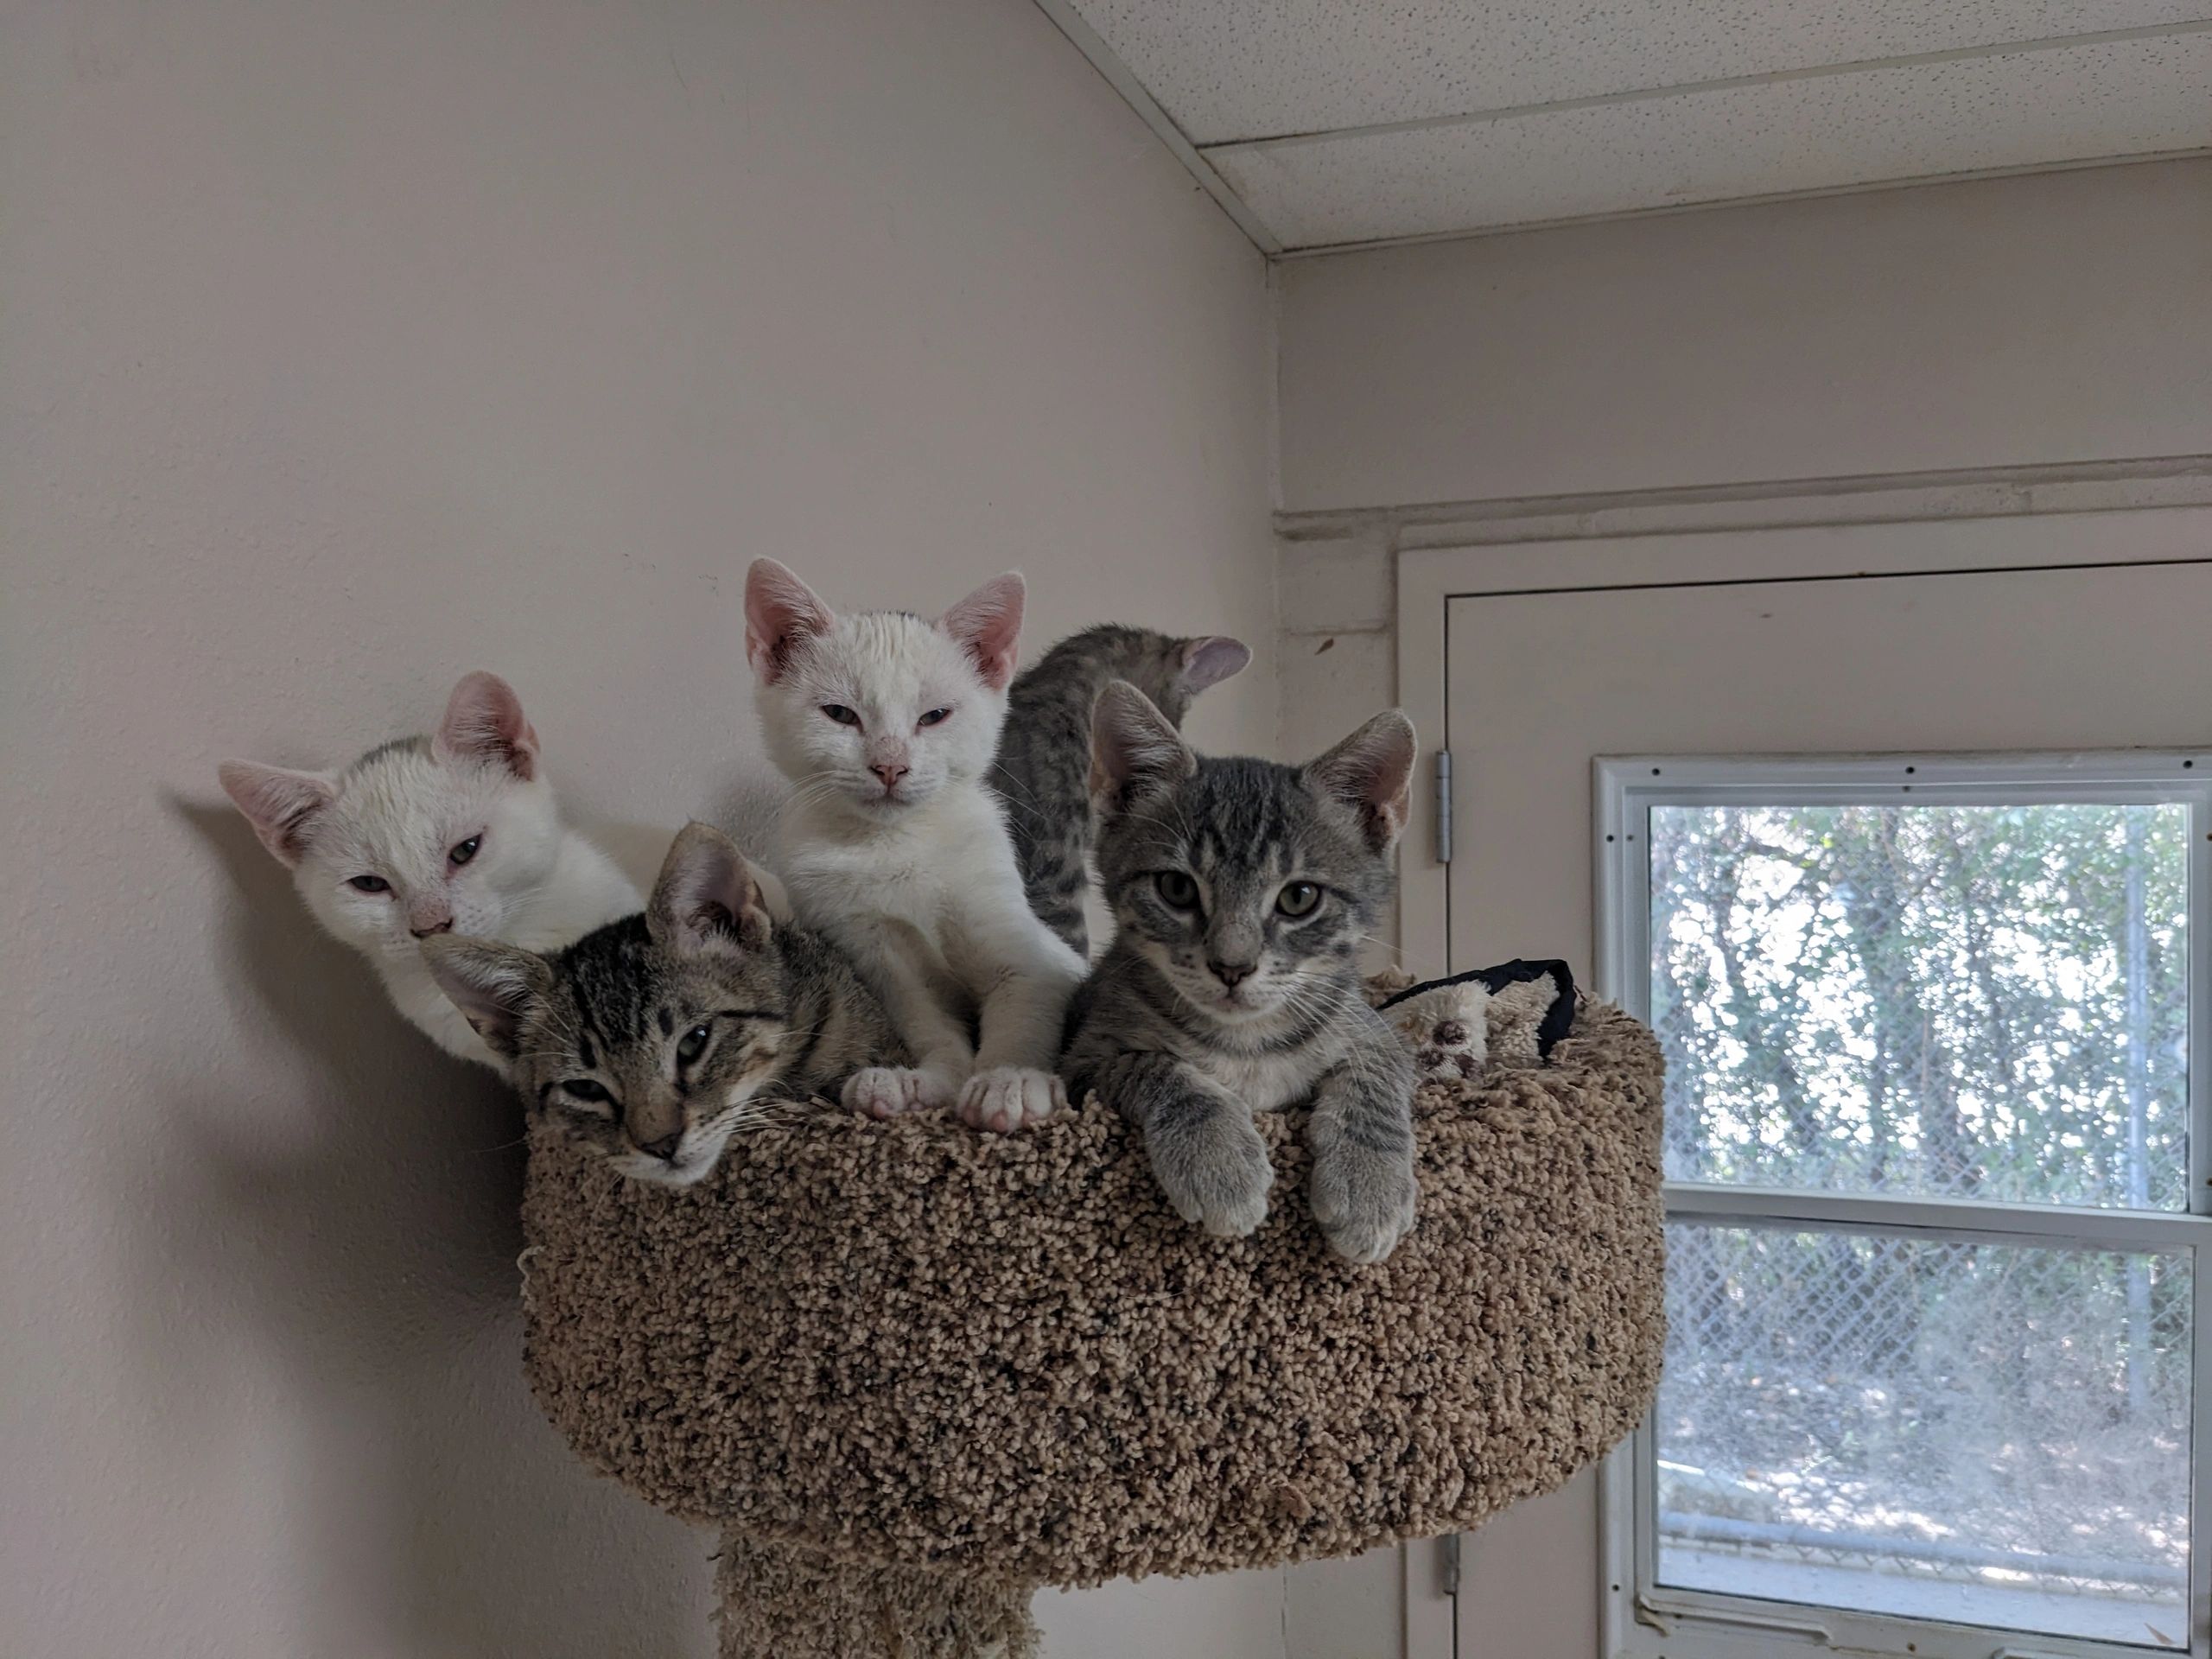 Kittens 